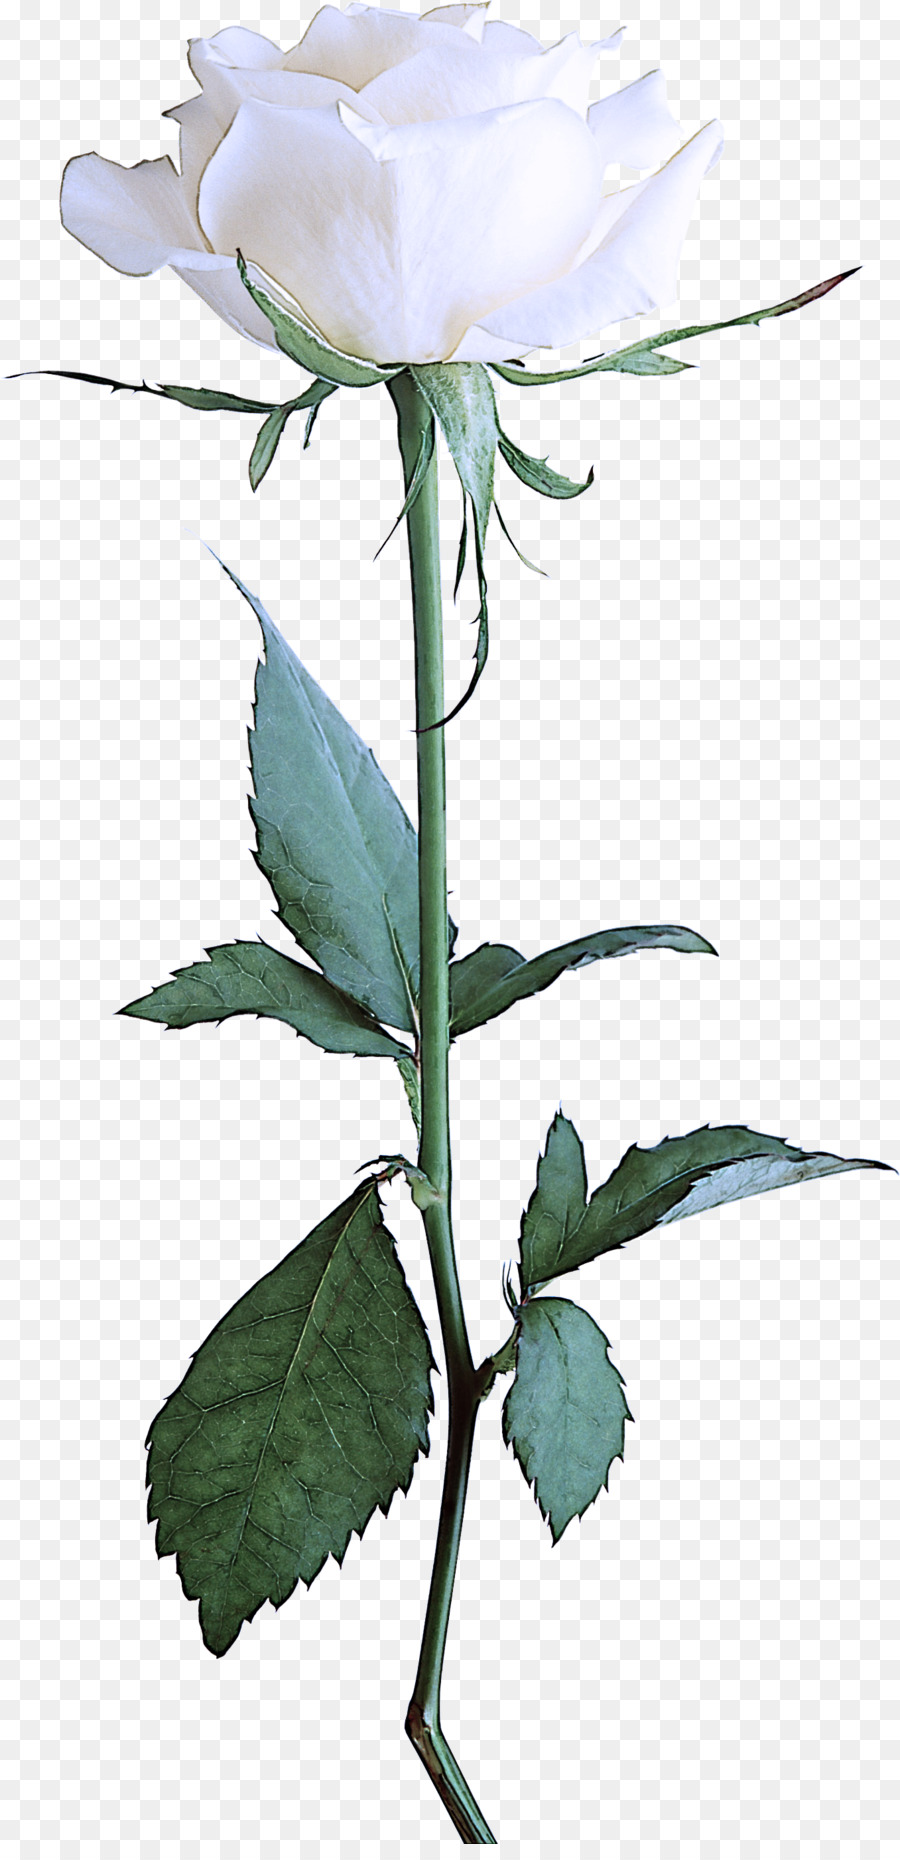 gambo della pianta della foglia della pianta di fioritura della pianta del fiore - 